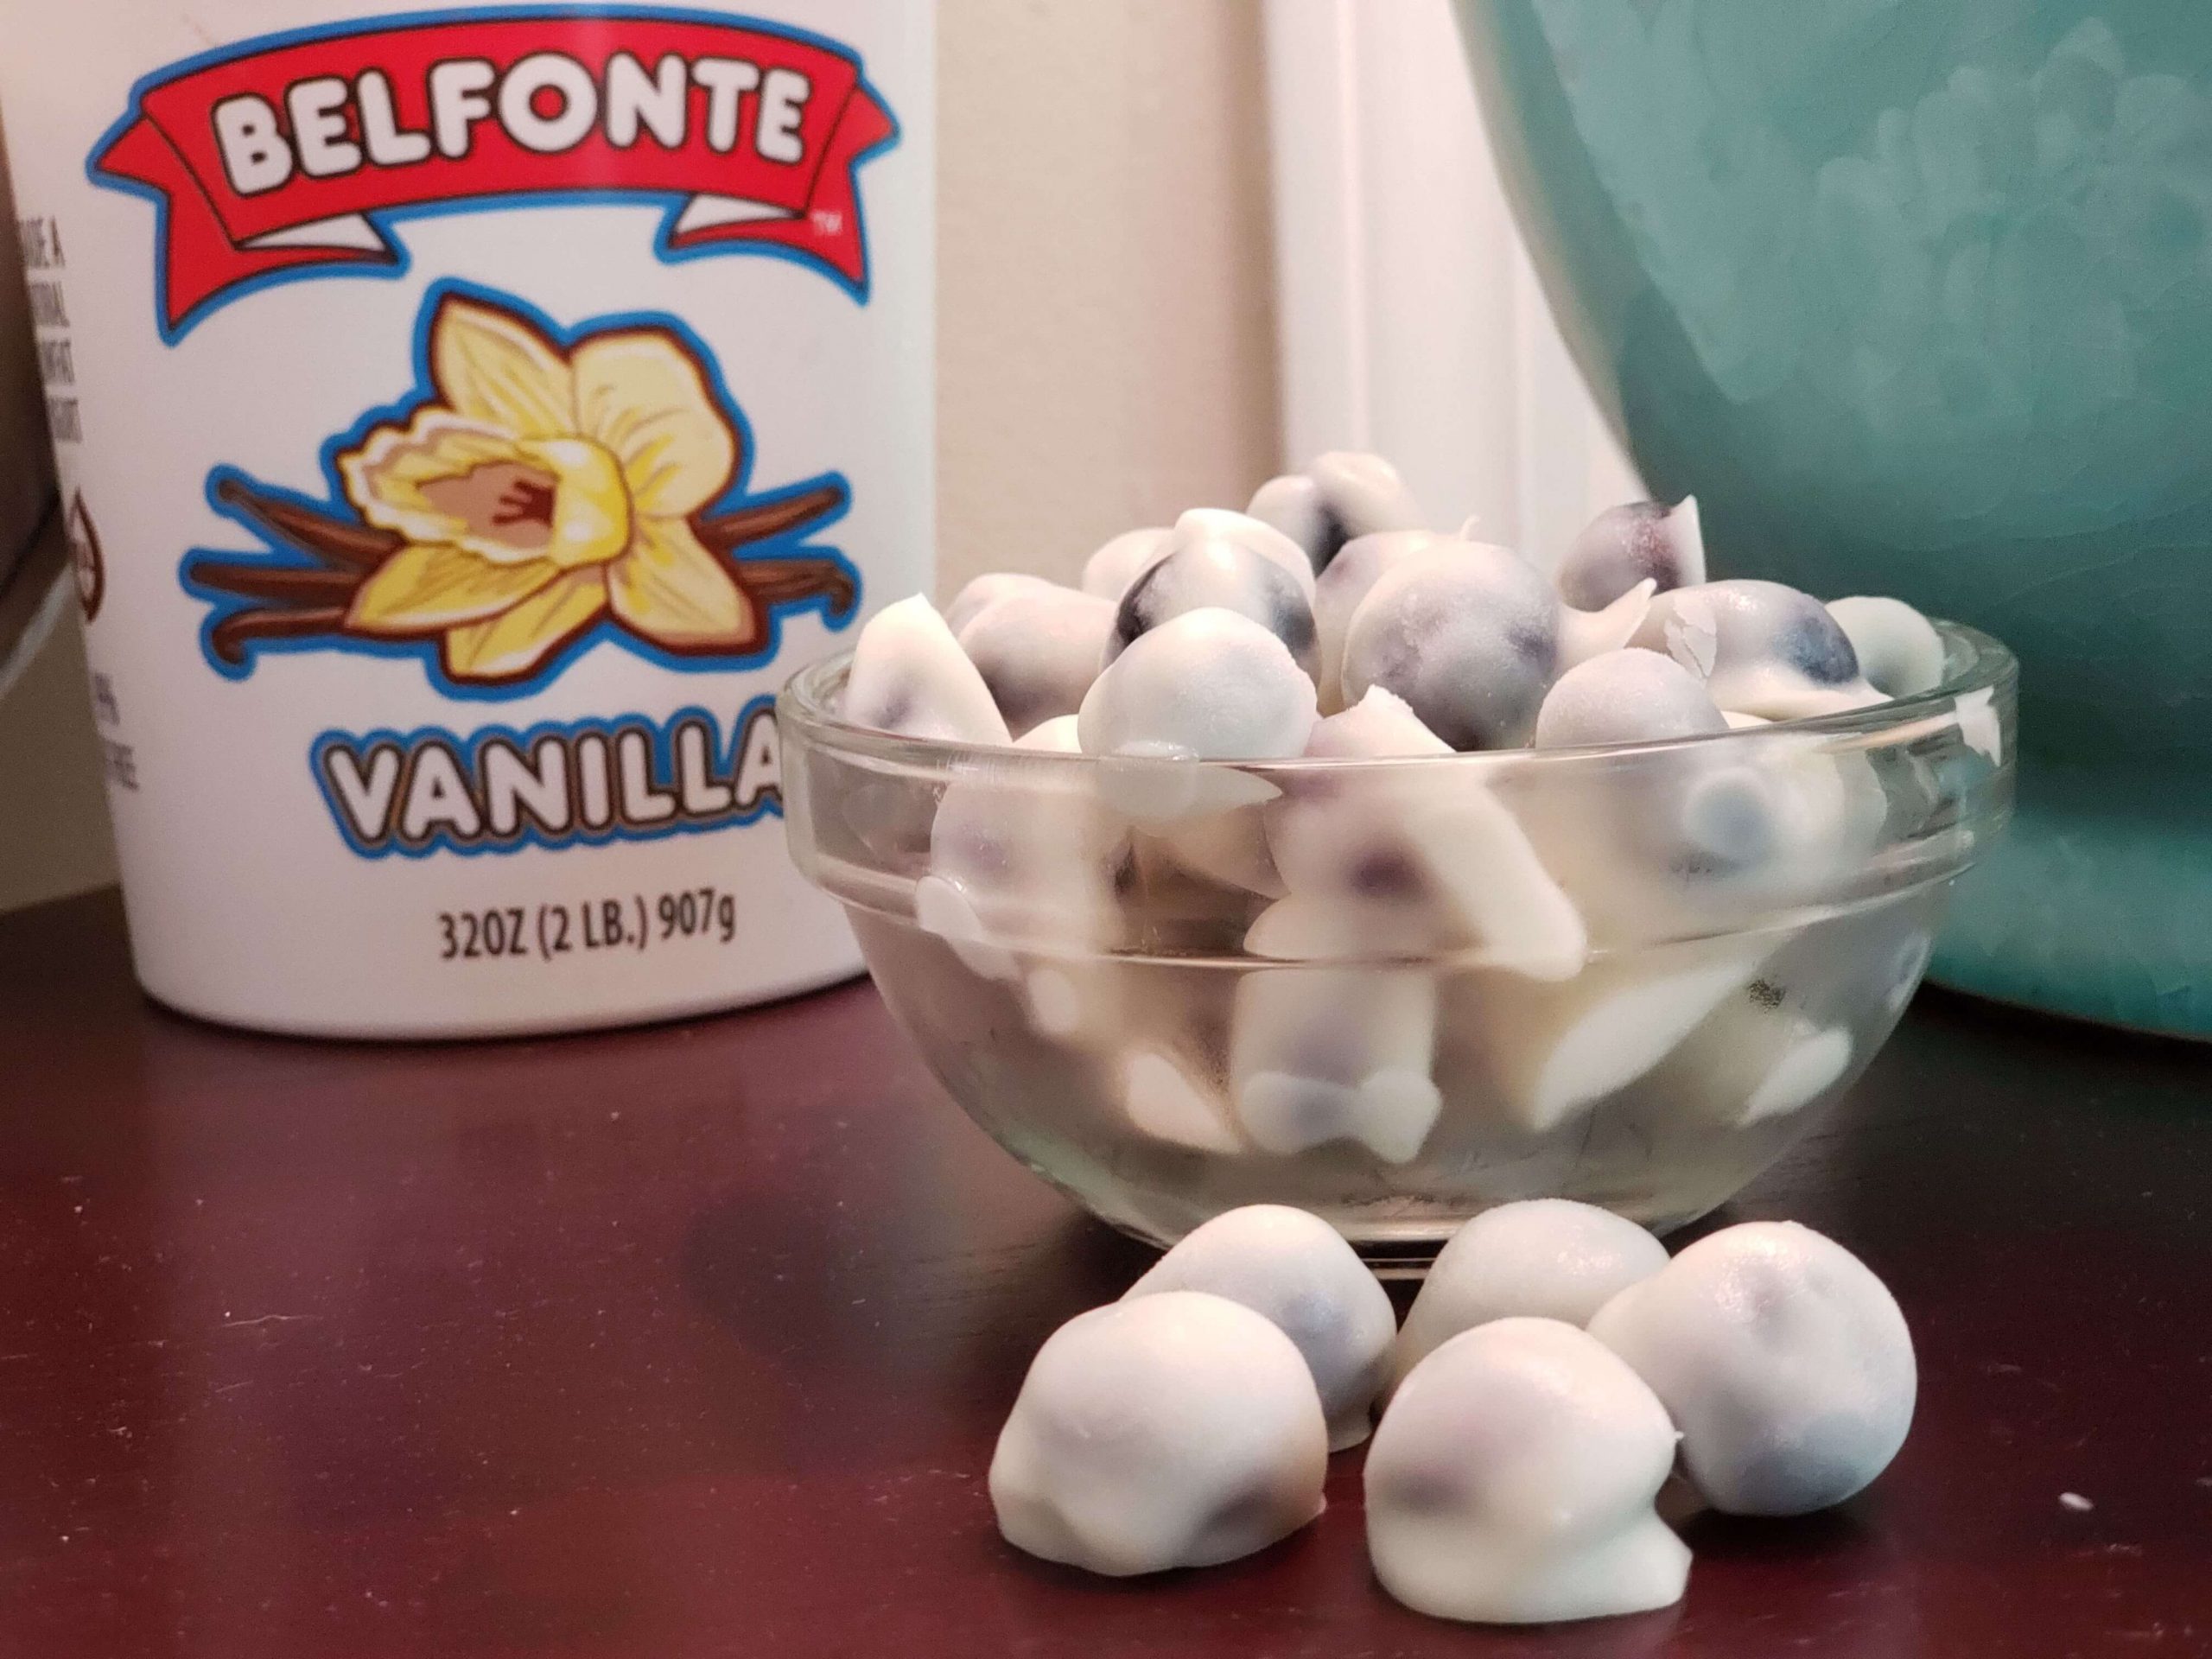 Frozen Blueberry Bites with Vanilla Yogurt